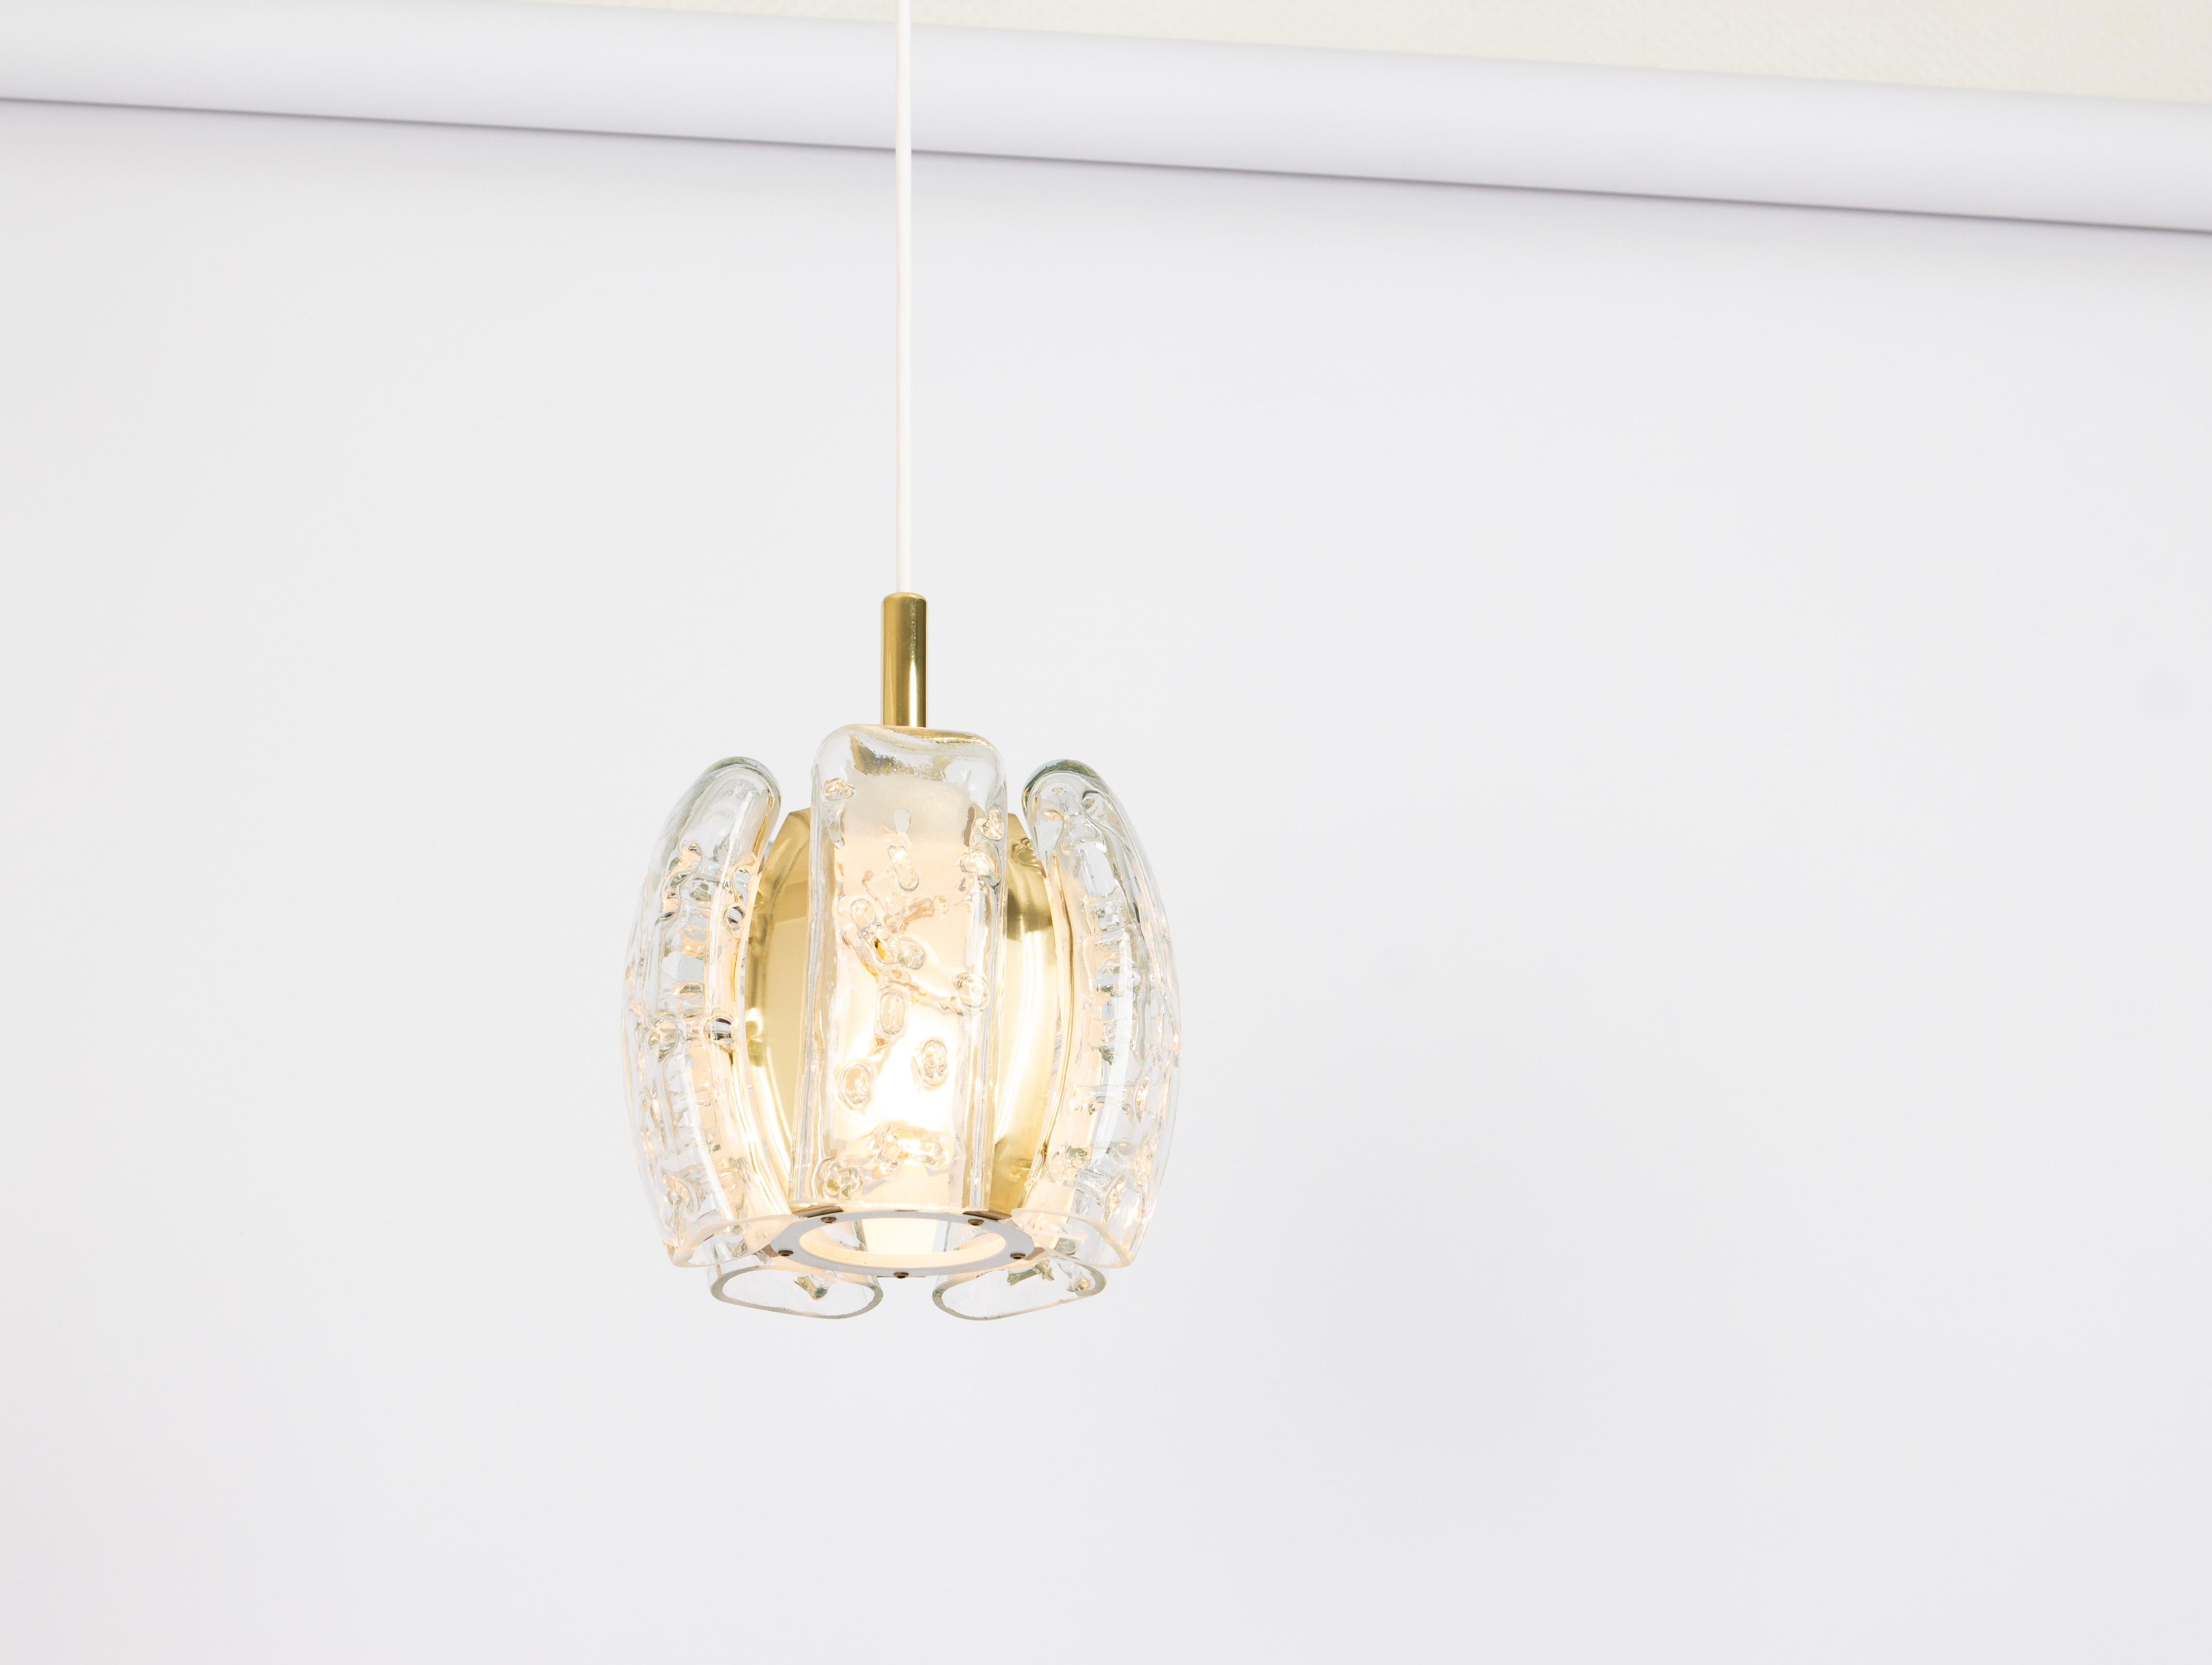 1 von 3 kleinen Murano-Hängeleuchten, entworfen von Doria, 1970er Jahre
Sehr guter Zustand. Gereinigt, gut verkabelt und einsatzbereit.
Jede Pendelleuchte benötigt eine E14 Glühbirne mit max. 40W.
Glühbirnen sind nicht enthalten. Es ist möglich,